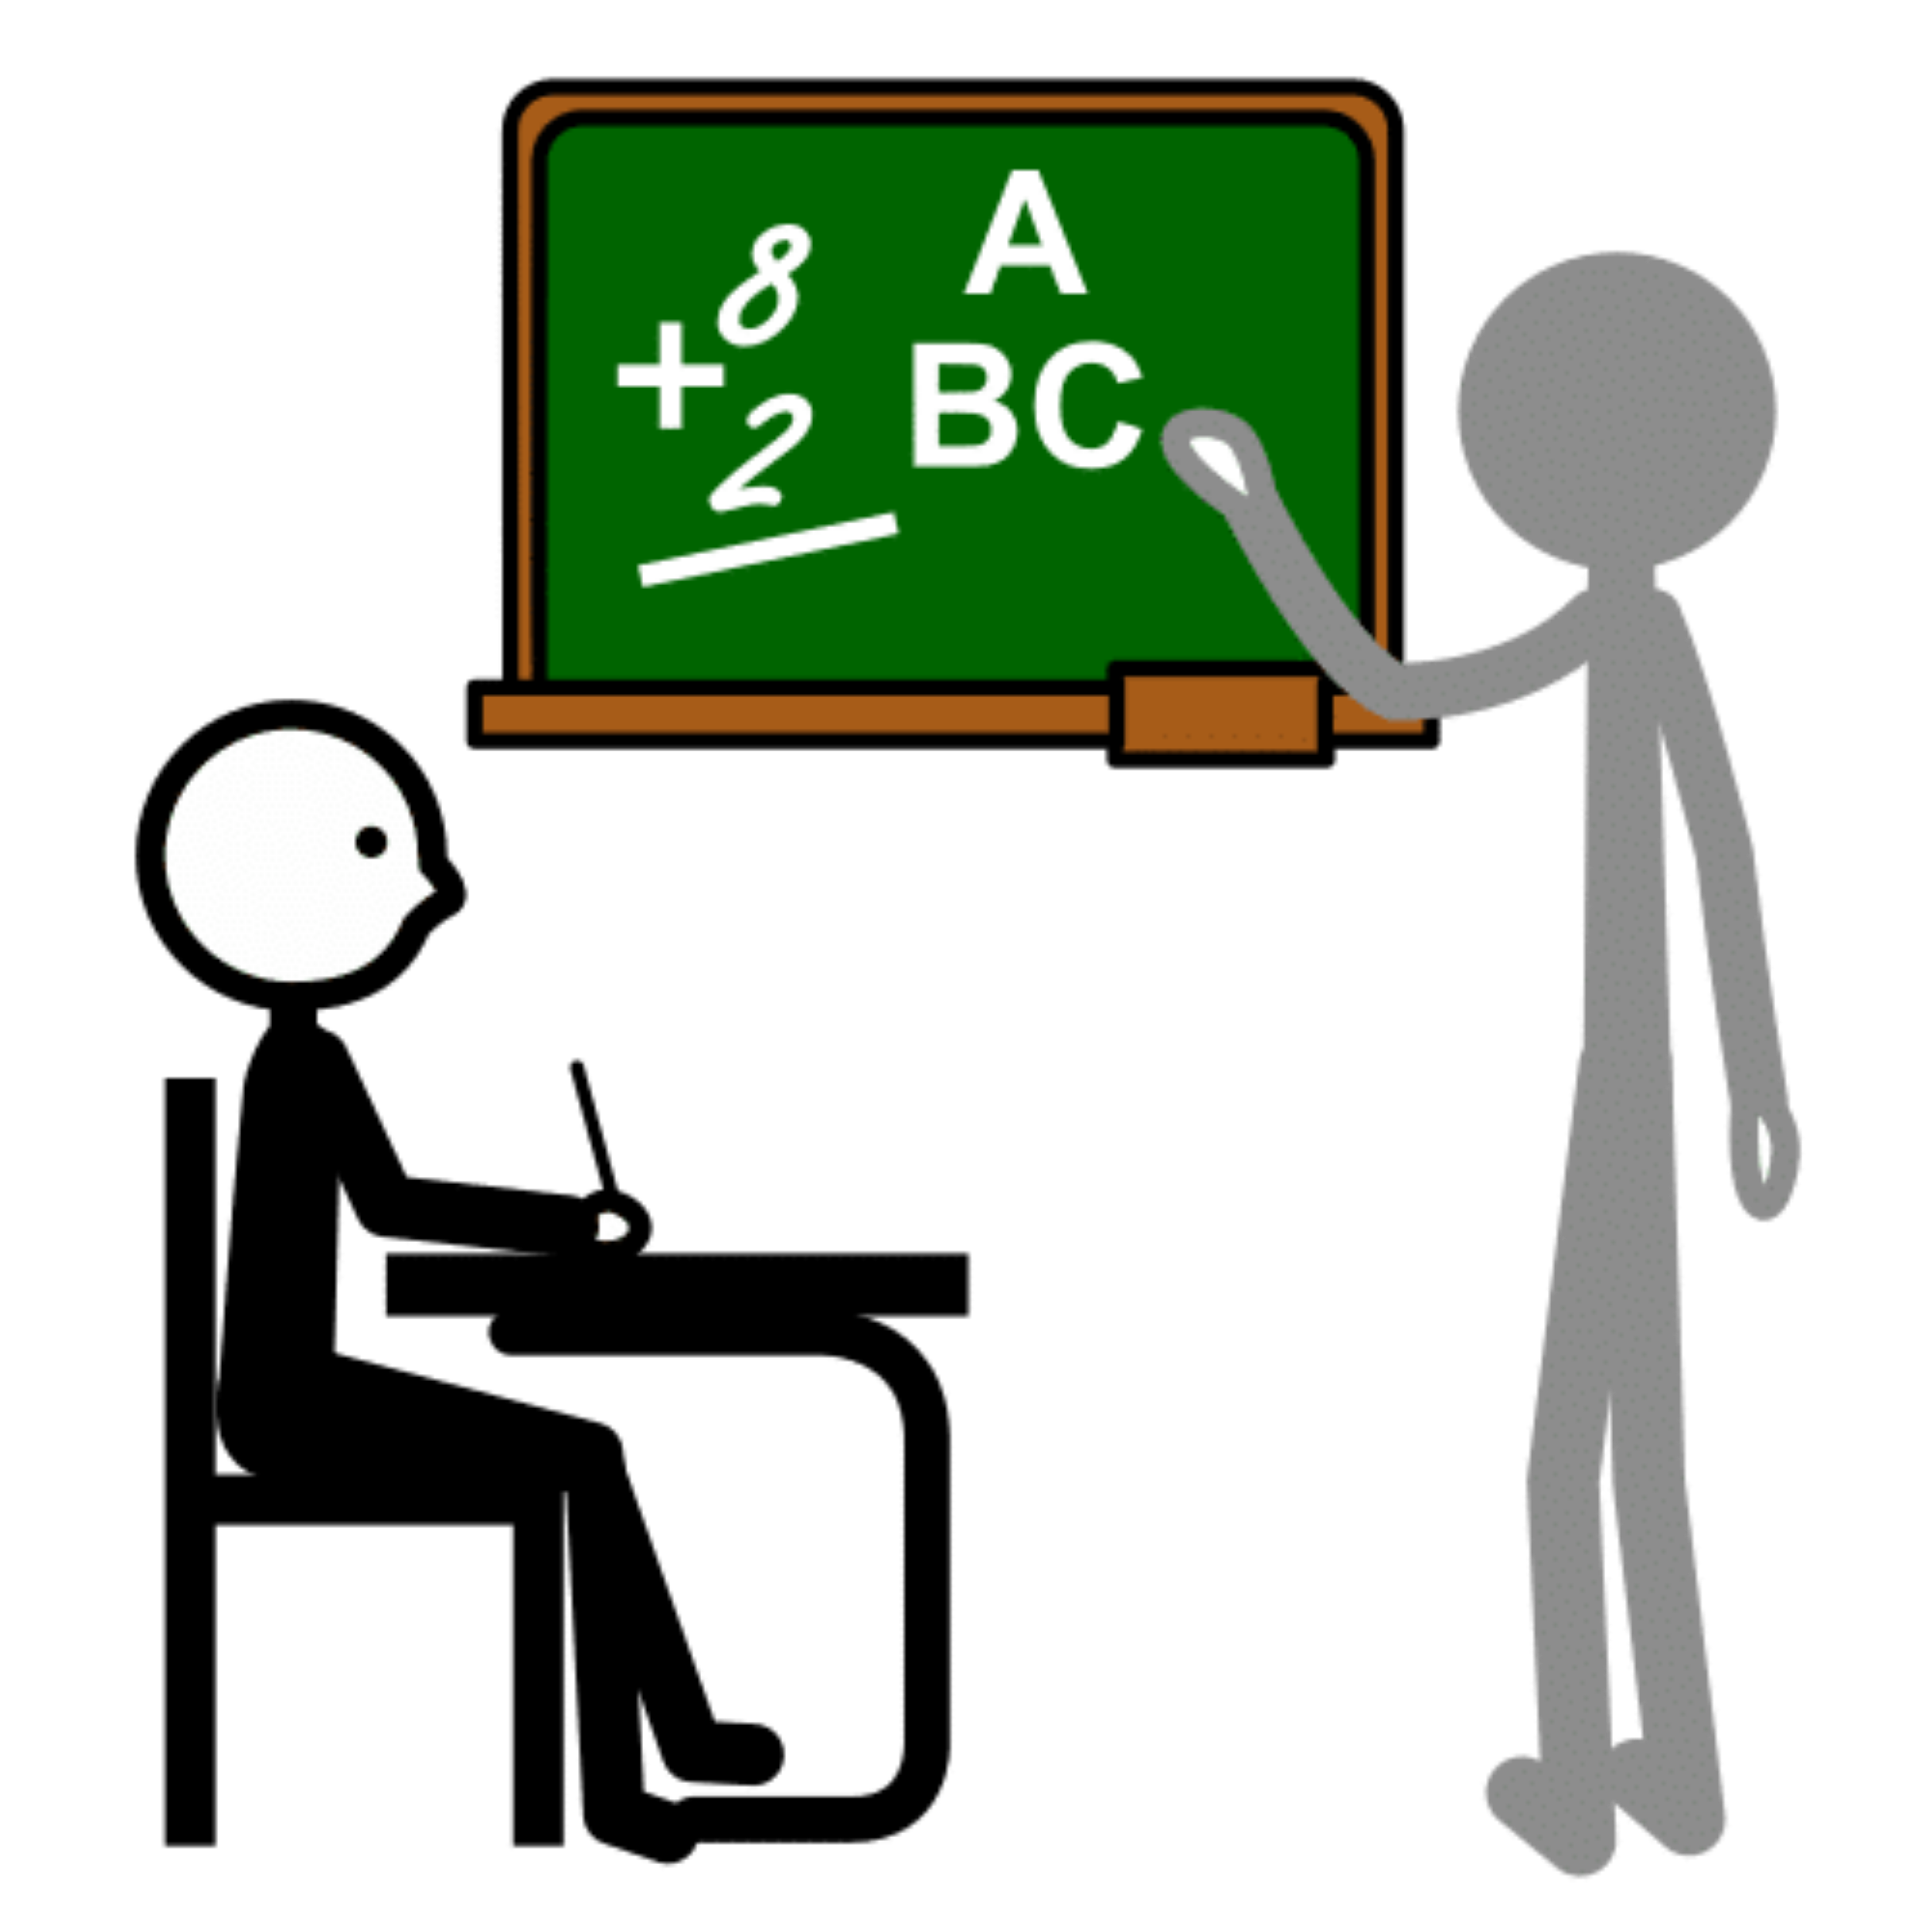 La imagen muestra un profesor impartiendo una clase a un alumno sentado en un pupitre